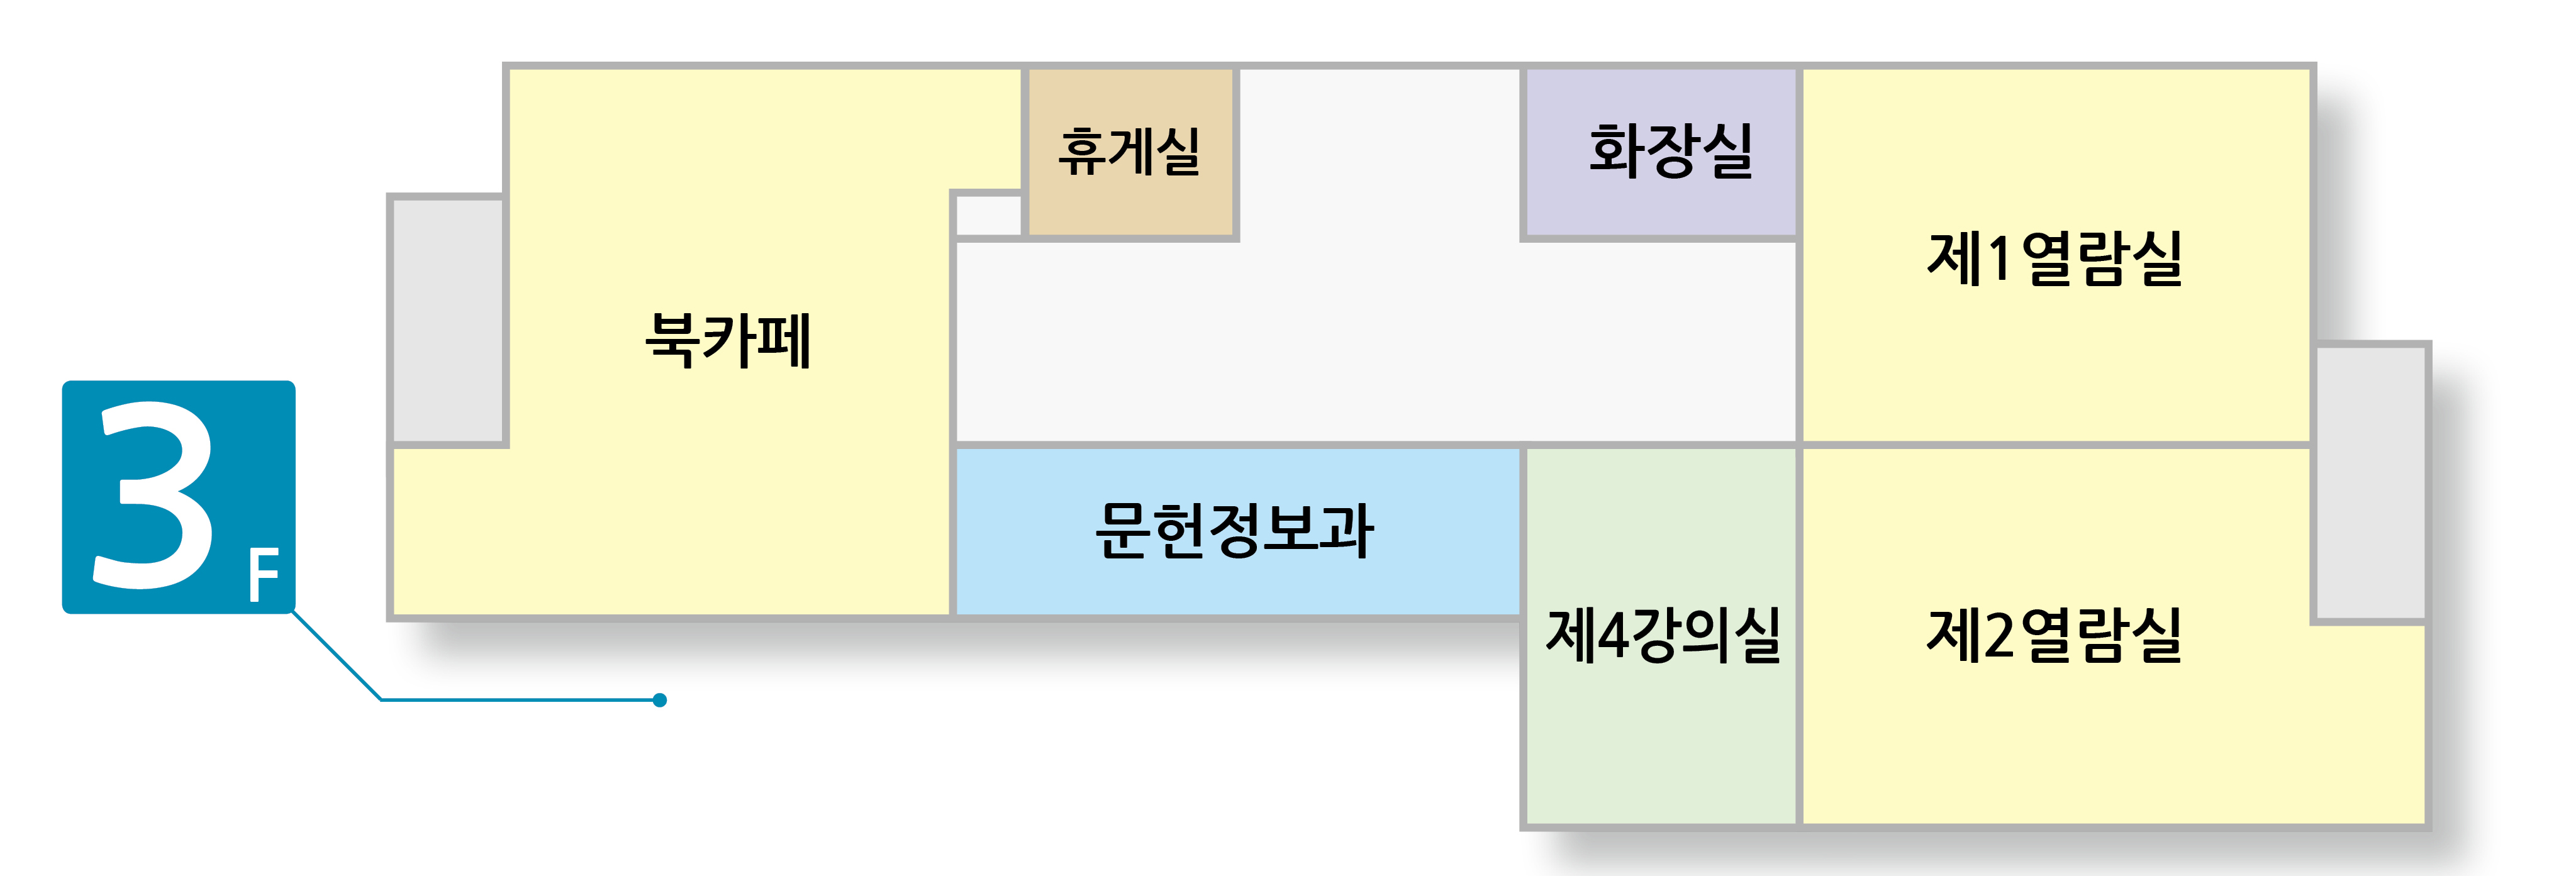 3층 : 북카페, 휴게실, 화장실, 제1열람실, 제2열람실, 제4강의실, 문헌정보과